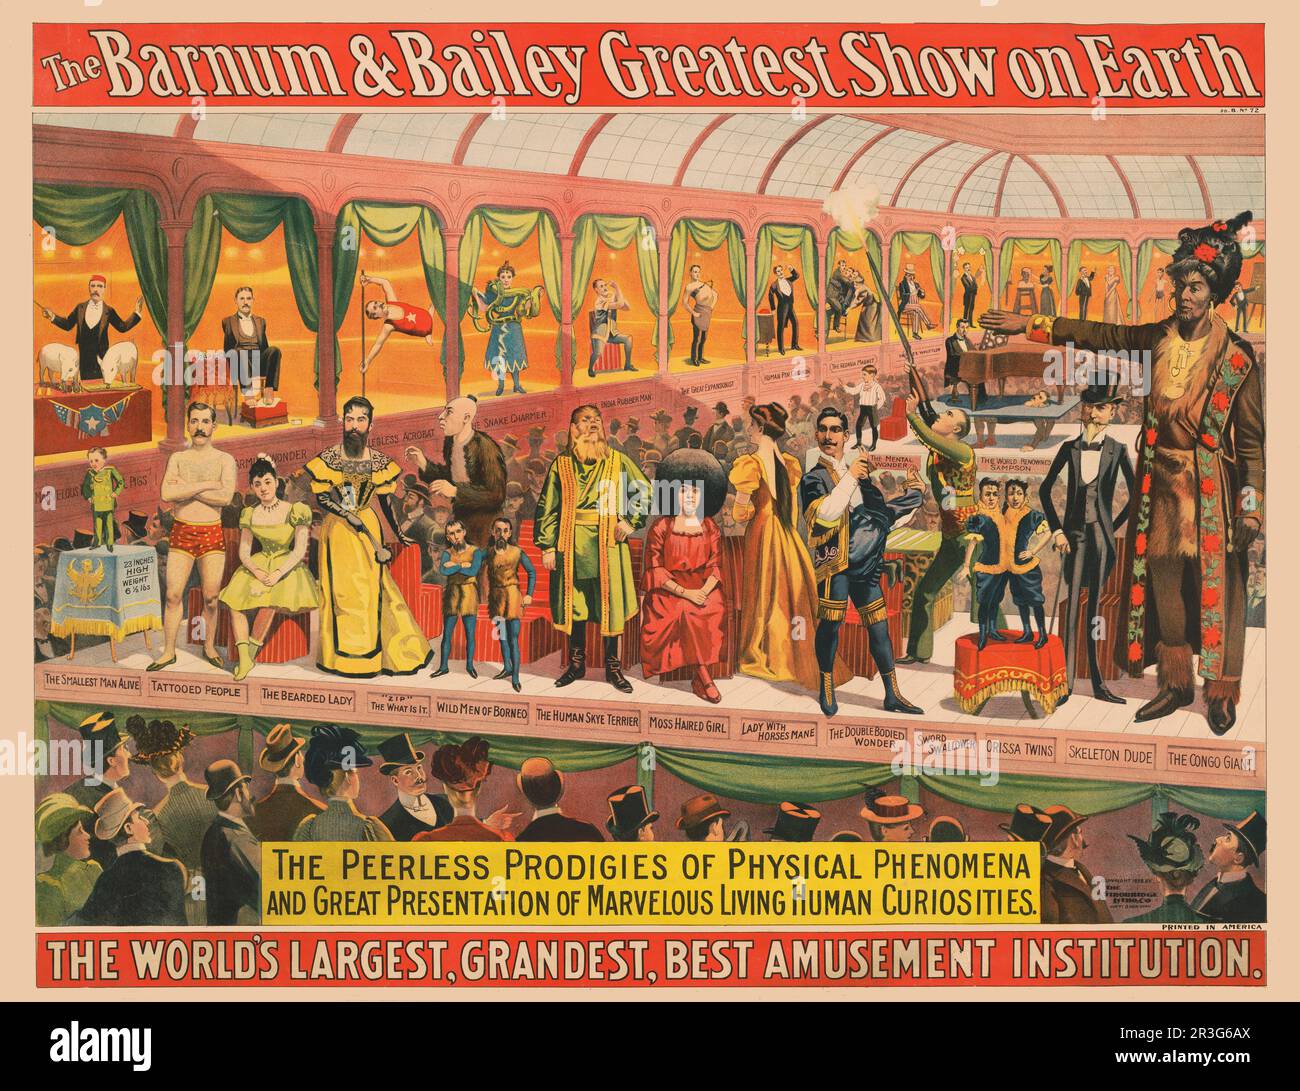 Vintage Barnum & Bailey Circus Poster, das die unvergleichlichen Wunderwerke physikalischer Phänomene zeigt, um 1898. Stockfoto